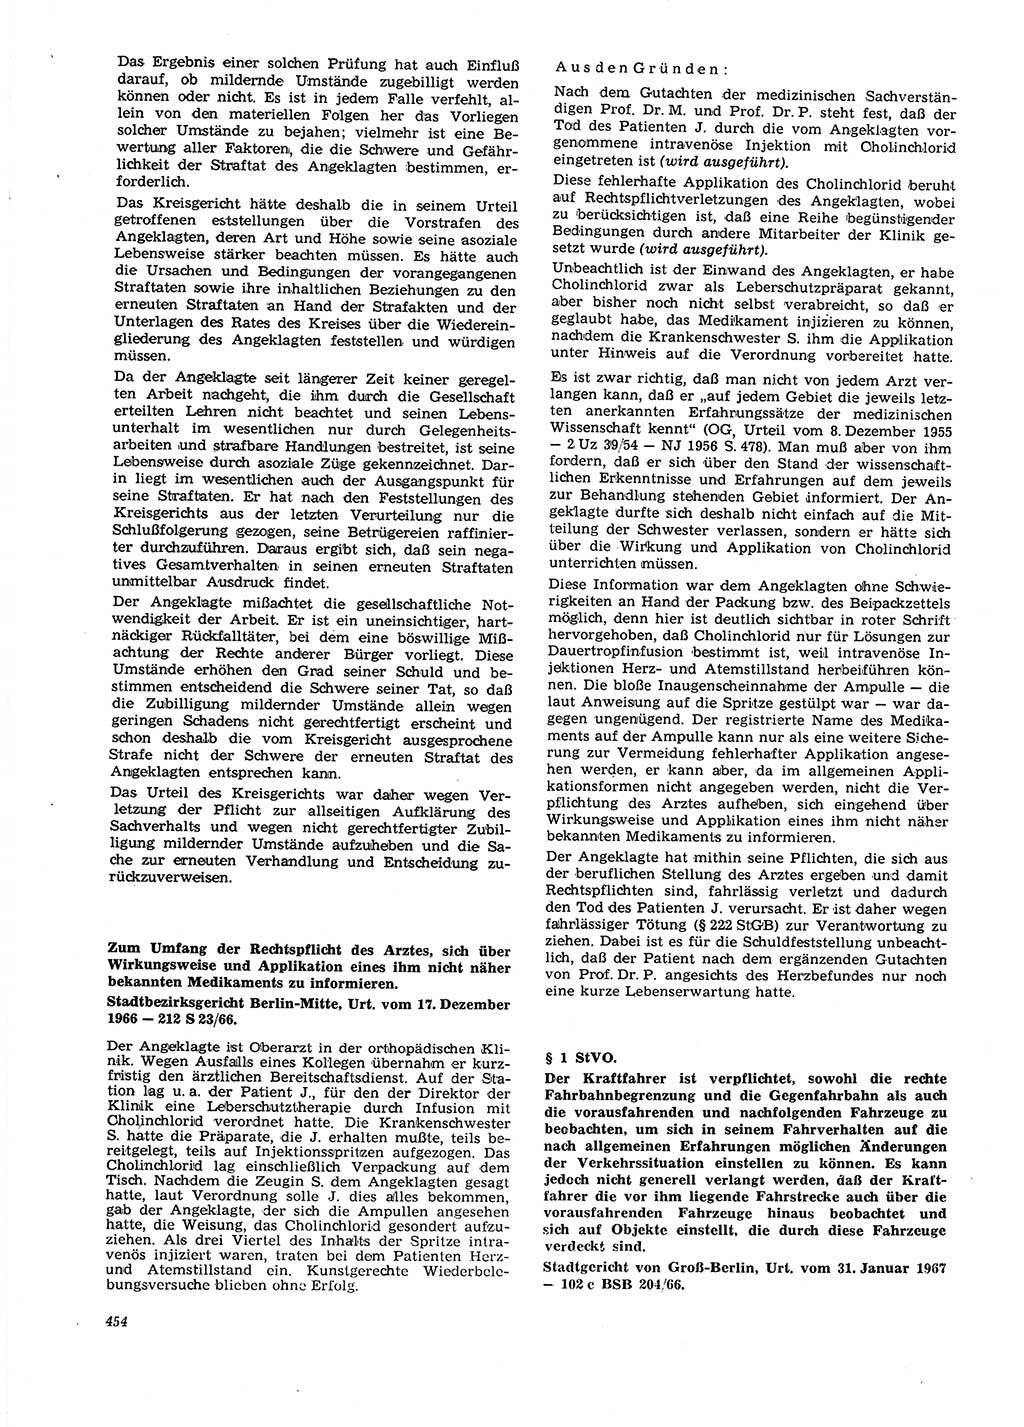 Neue Justiz (NJ), Zeitschrift für Recht und Rechtswissenschaft [Deutsche Demokratische Republik (DDR)], 21. Jahrgang 1967, Seite 454 (NJ DDR 1967, S. 454)